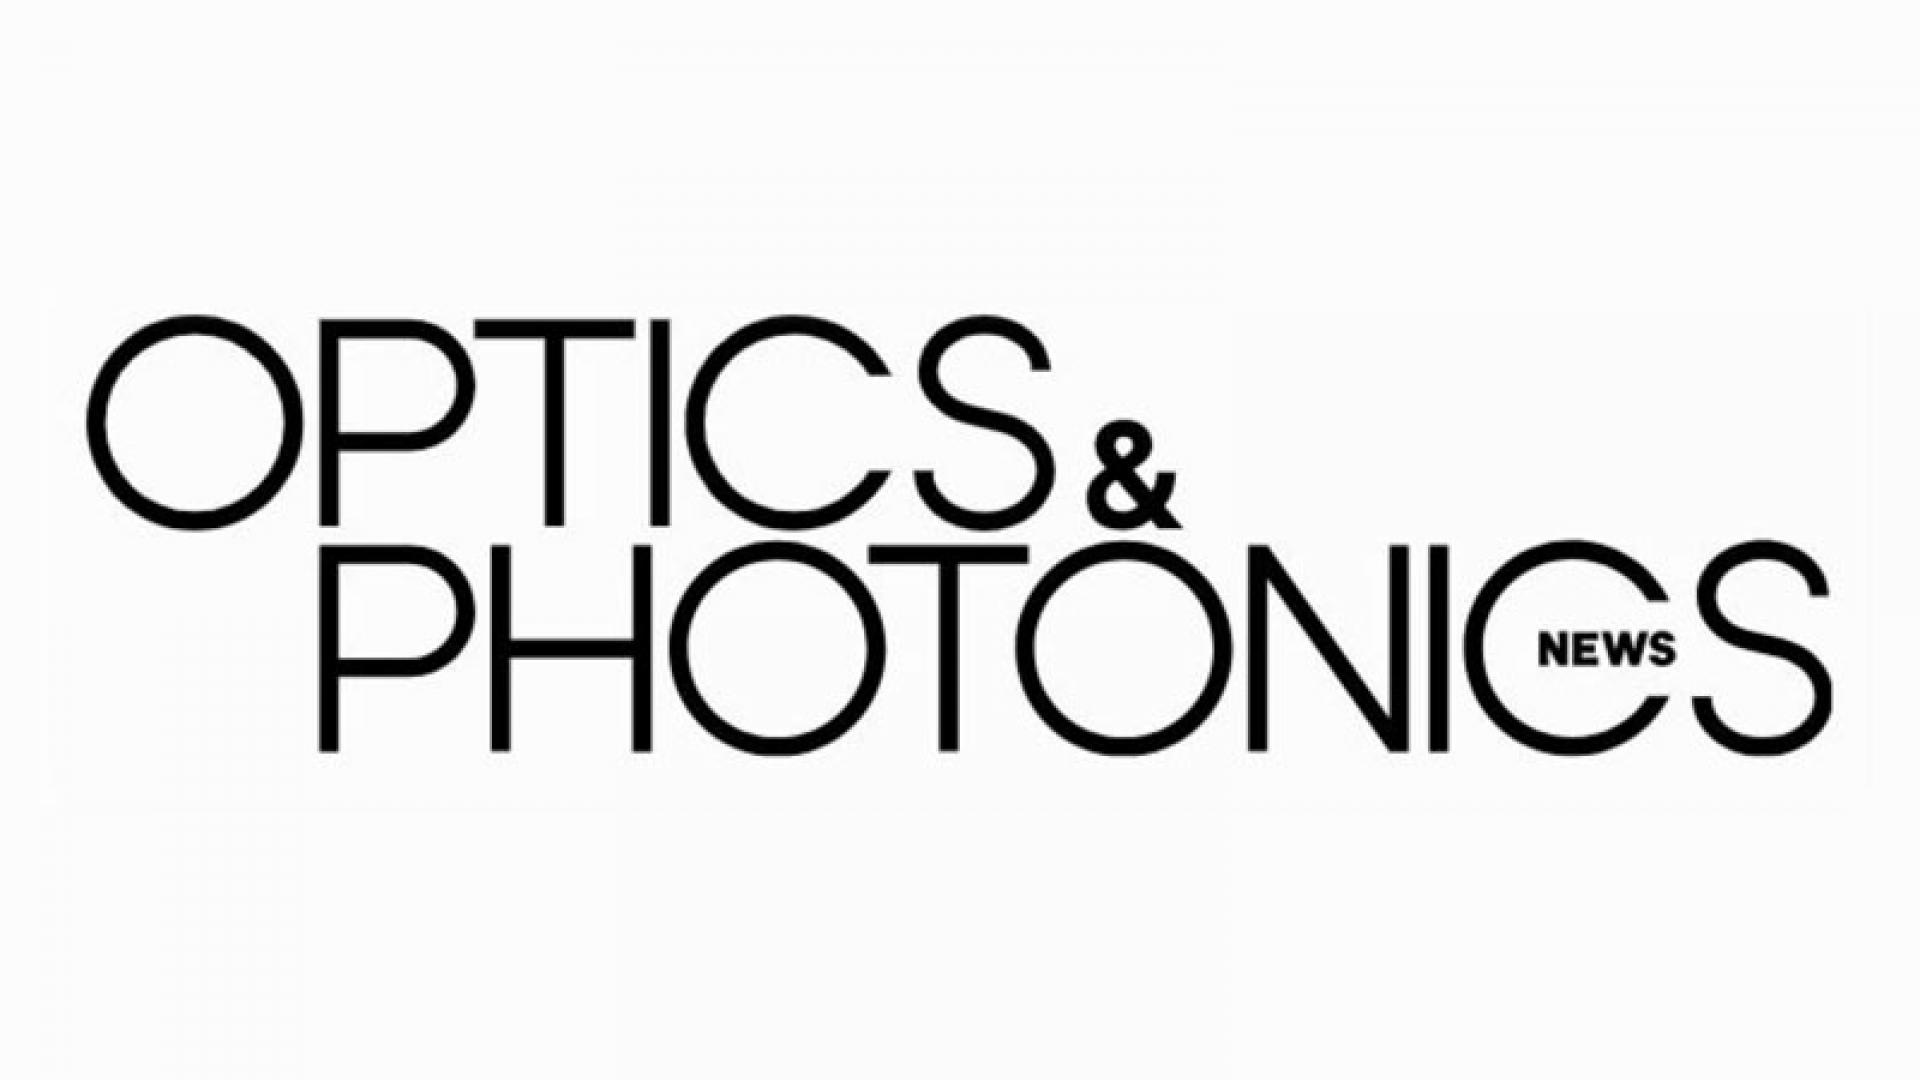 Optics photonics